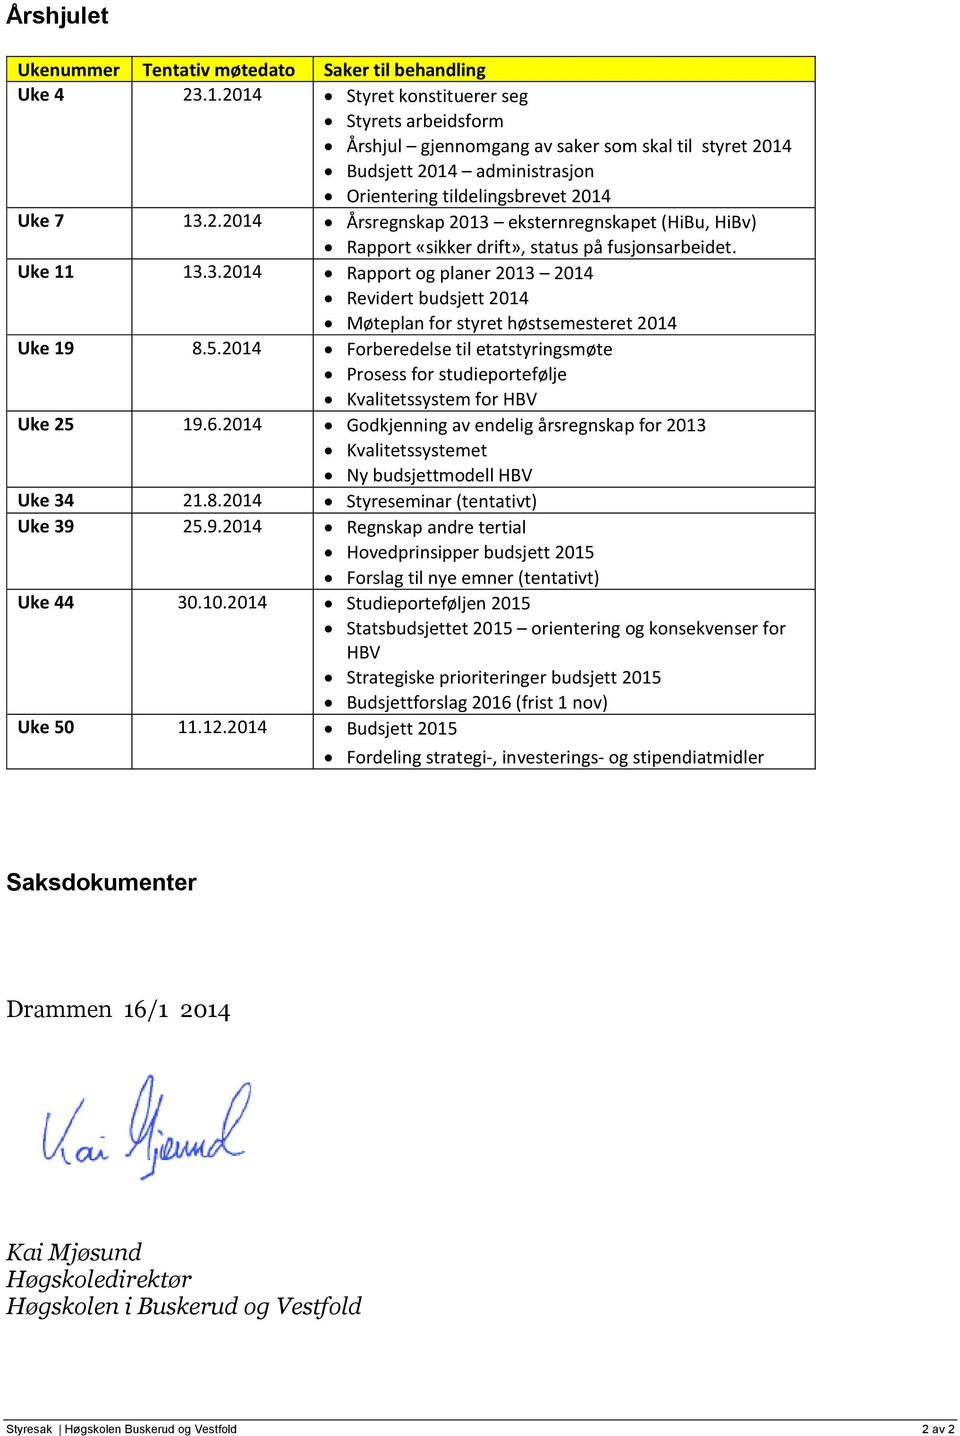 Uke 11 13.3.2014 Rapport og planer 2013 2014 Revidert budsjett 2014 Møteplan for styret høstsemesteret 2014 Uke 19 8.5.